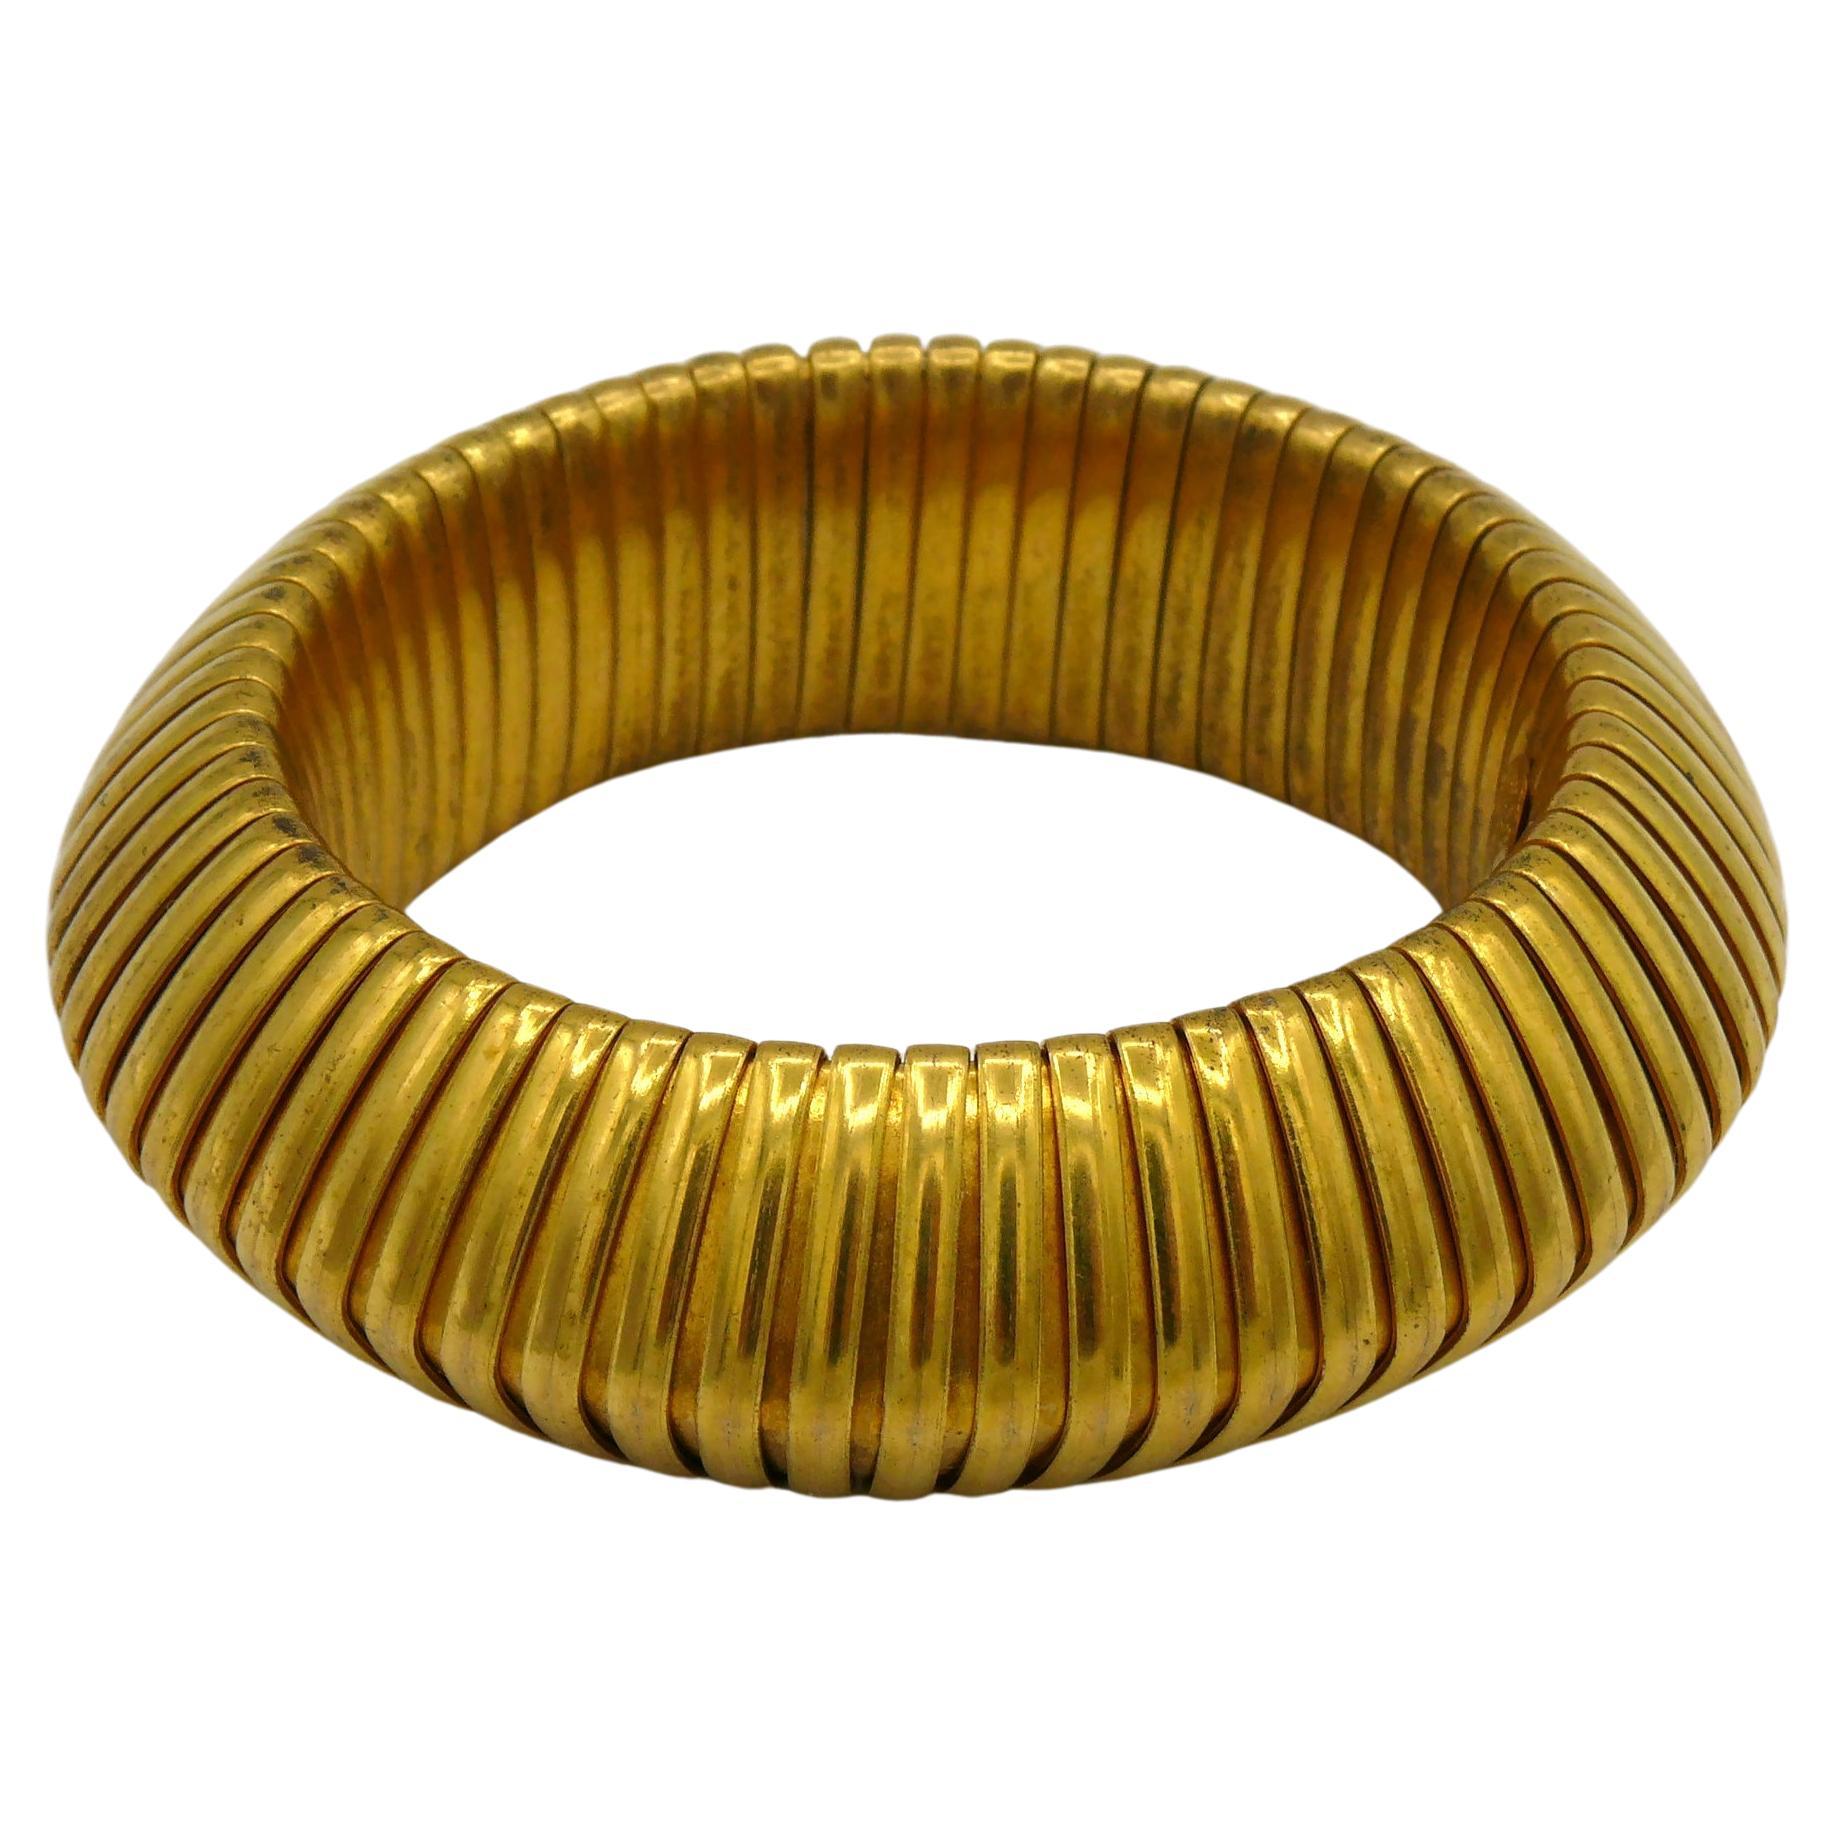 Yves Saint Laurent Rive Gauche Vintage Gold Toned Bracelet